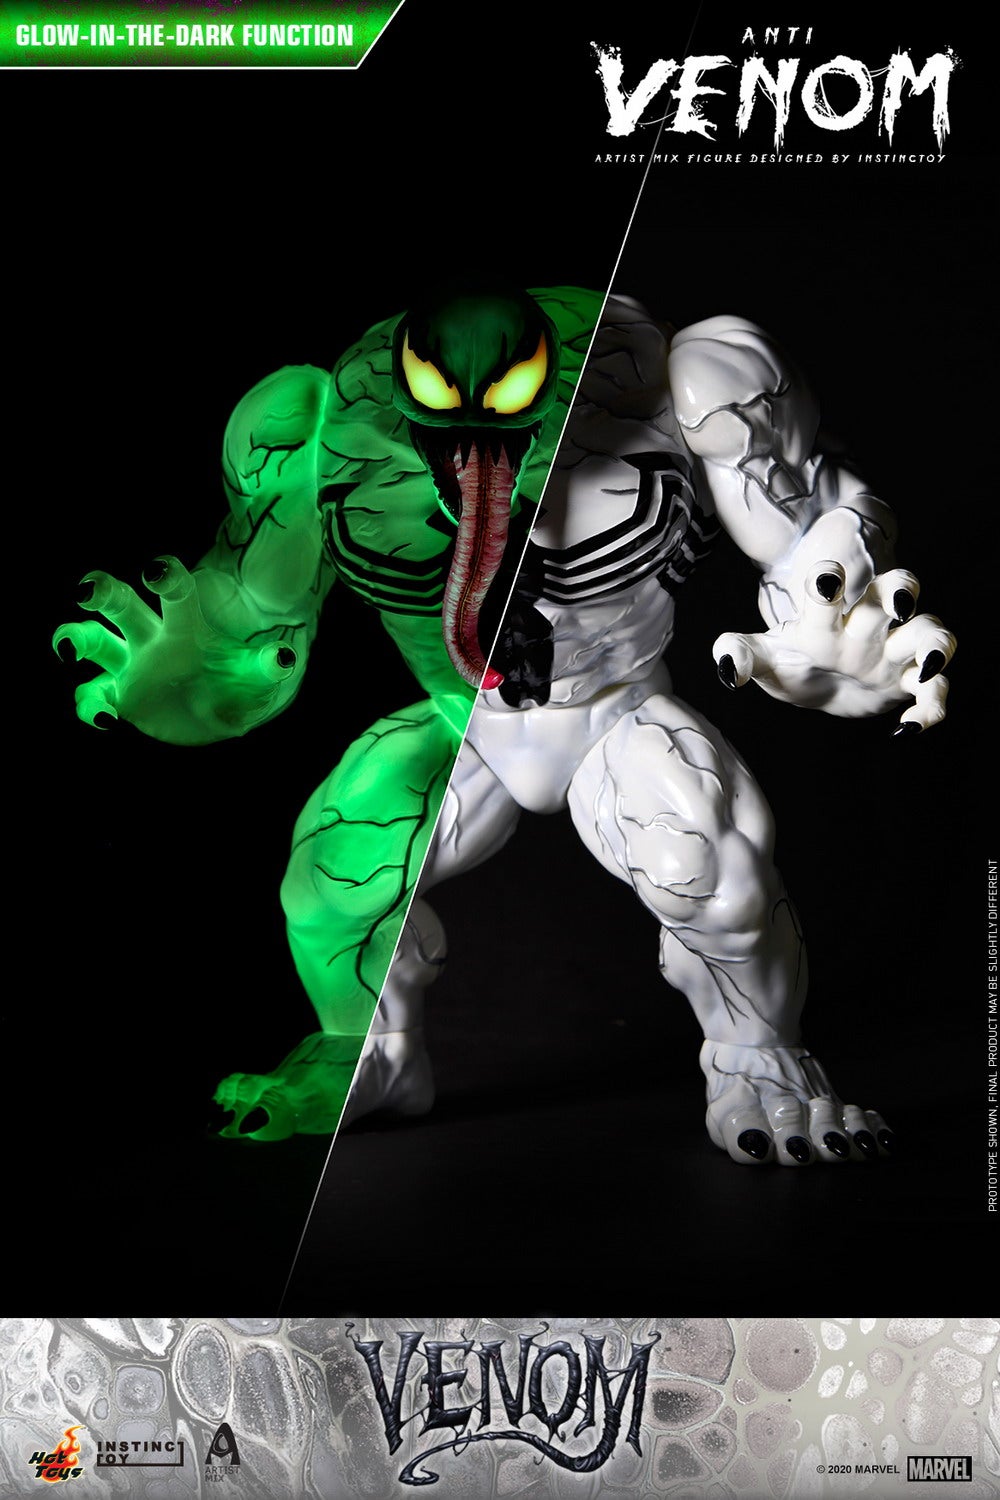 Hot Toys - Venom (Comic) - Anti Venom Artist Mix Designed by INSTINCTOY_PR2